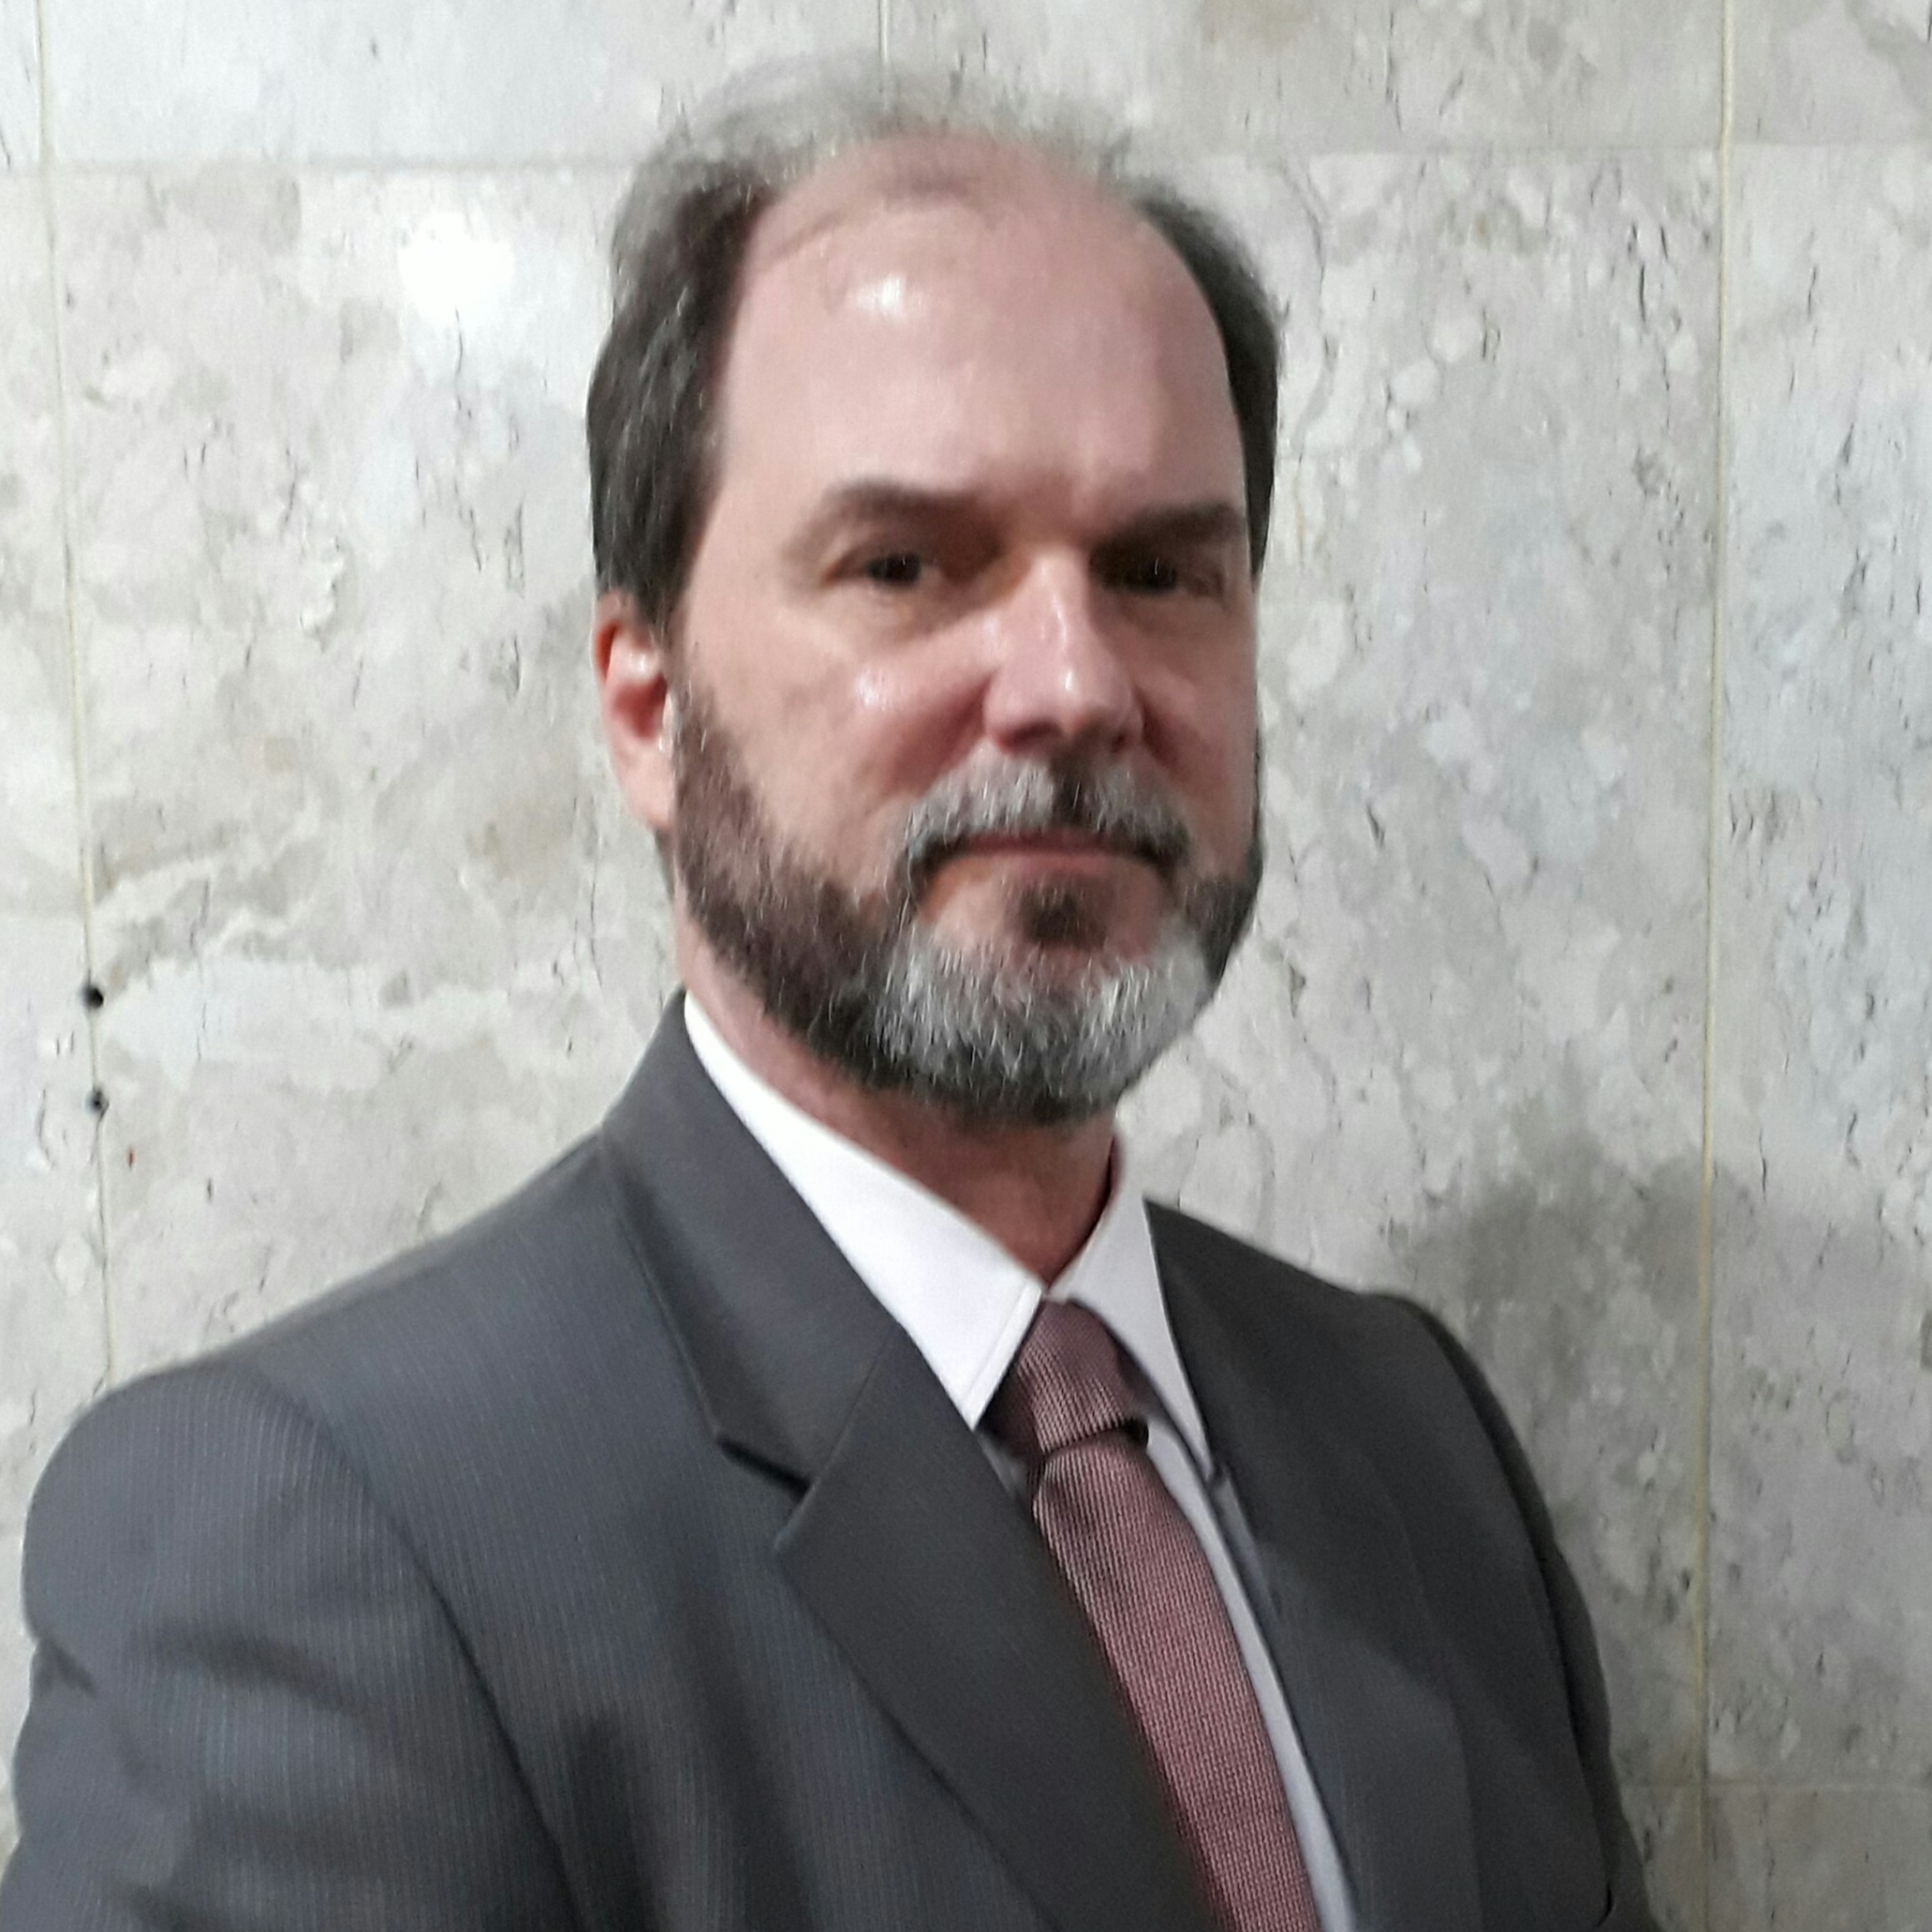 Marco Antonio Fernandes de Valério